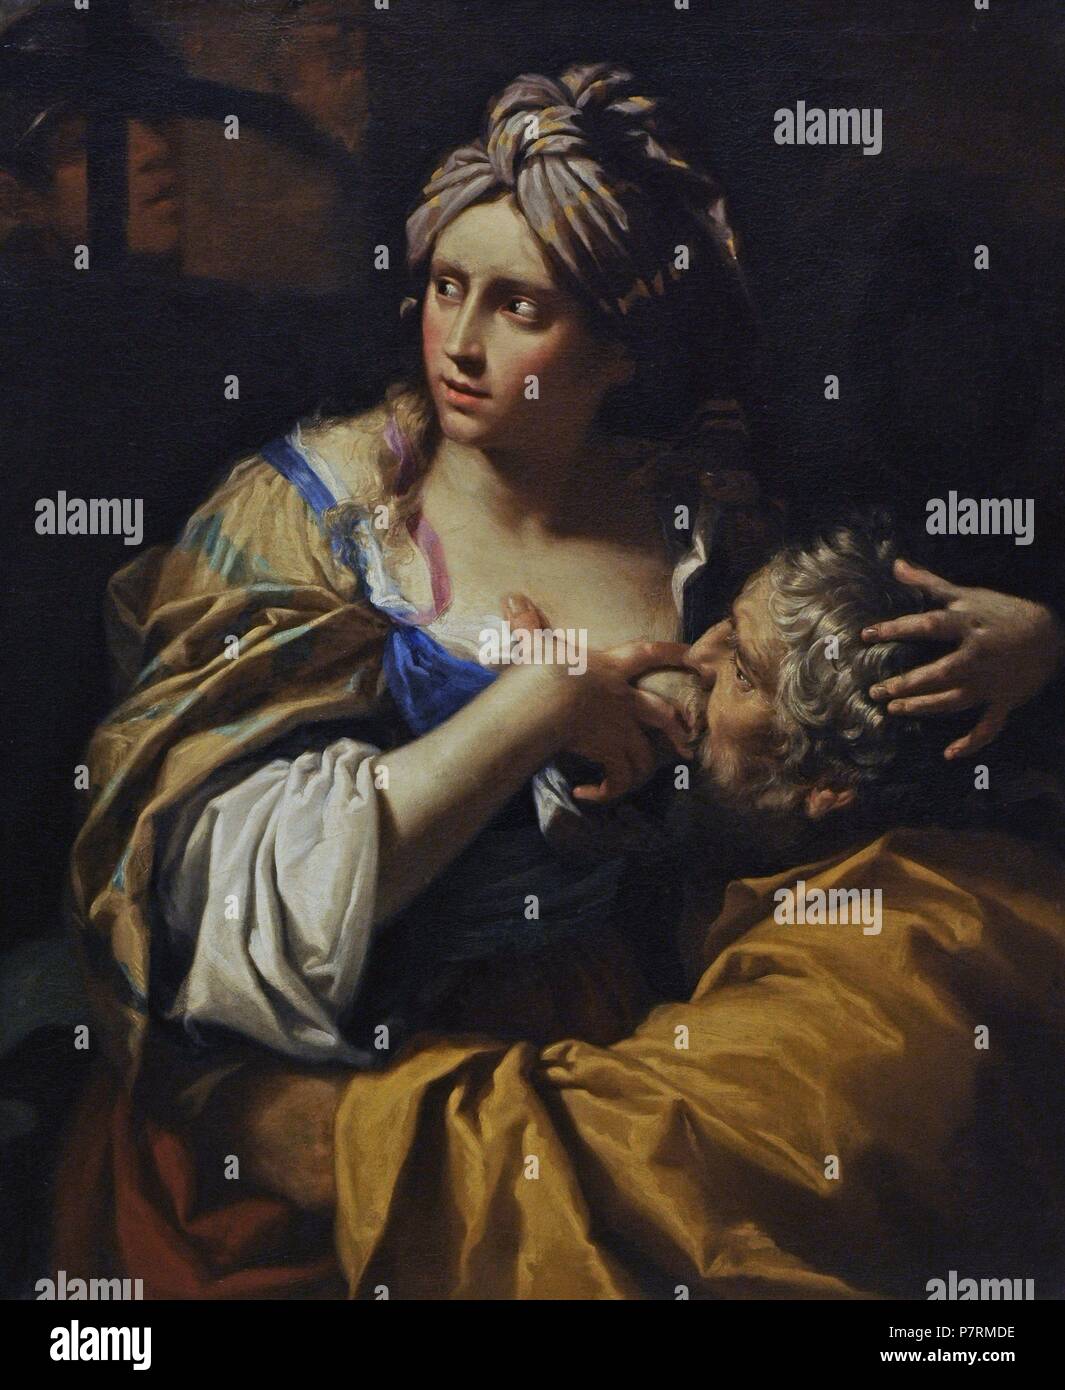 Lorenzo Pasinelli (1629-1700). Peintre italien. Charité romaine, ca.1670. Galerie nationale. Oslo. La Norvège. Banque D'Images